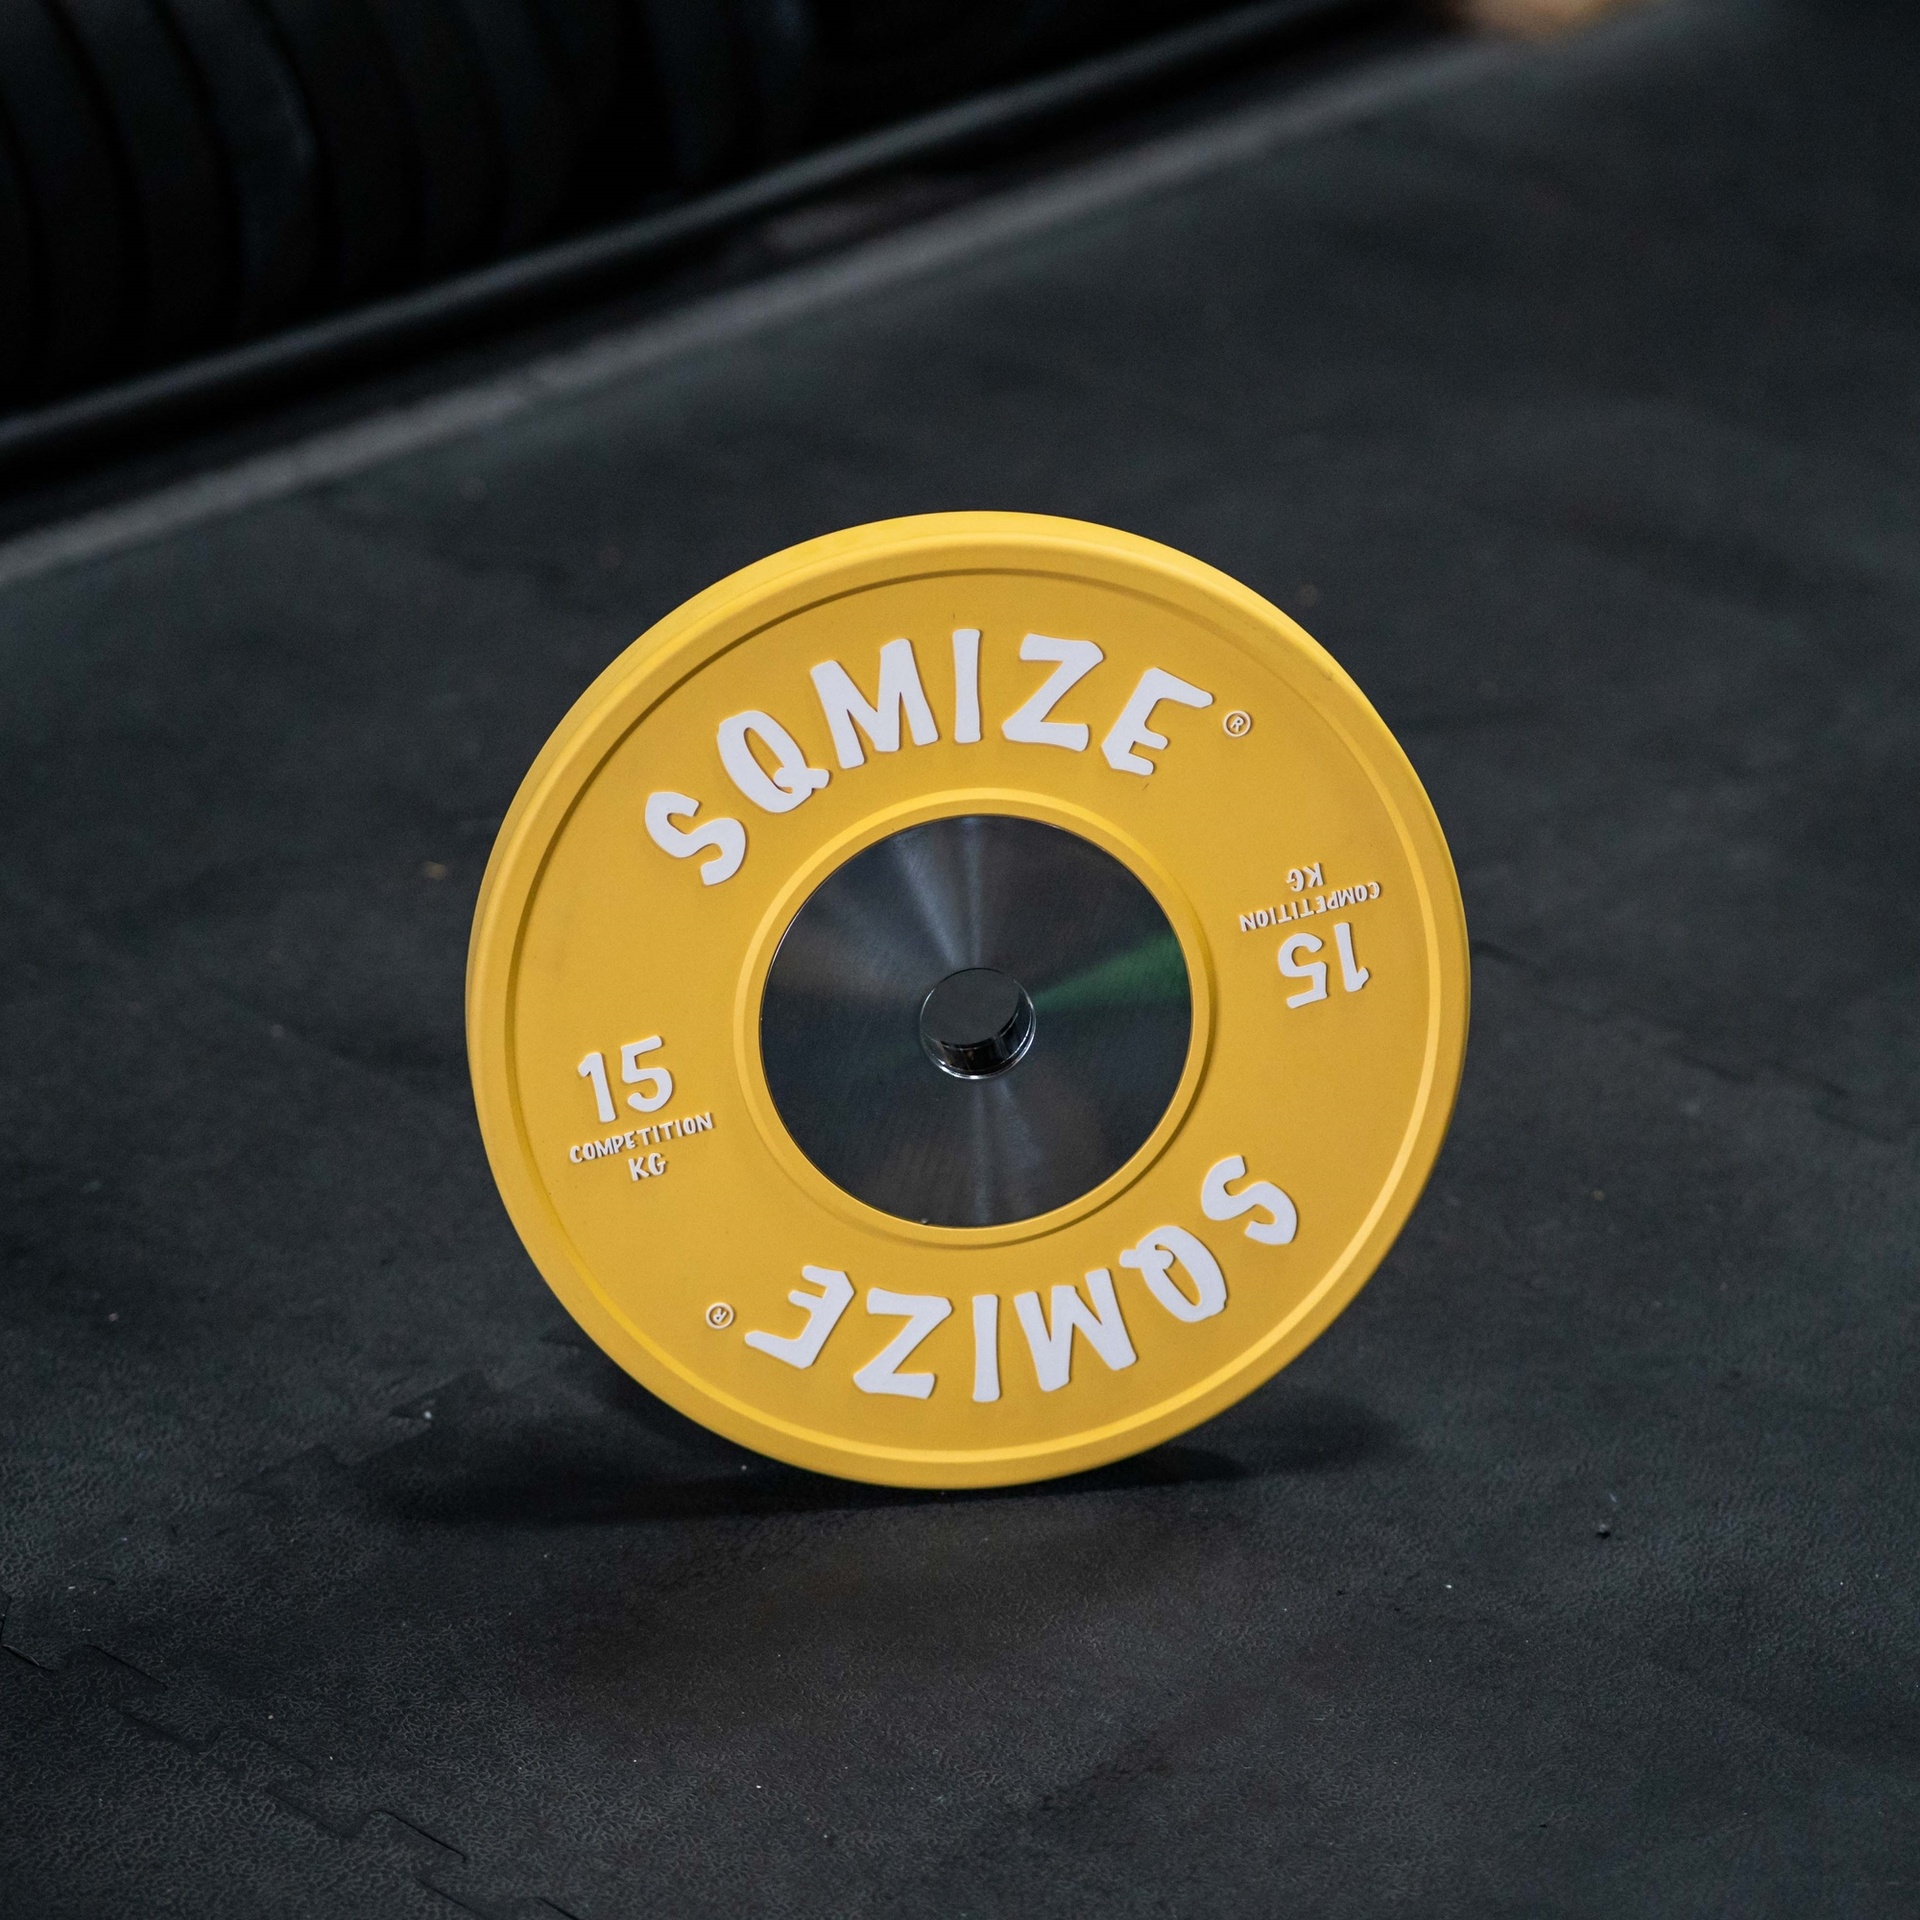 Premium Bison Competition Bumper Plate Set SQMIZE® CompBP140, 140 kg